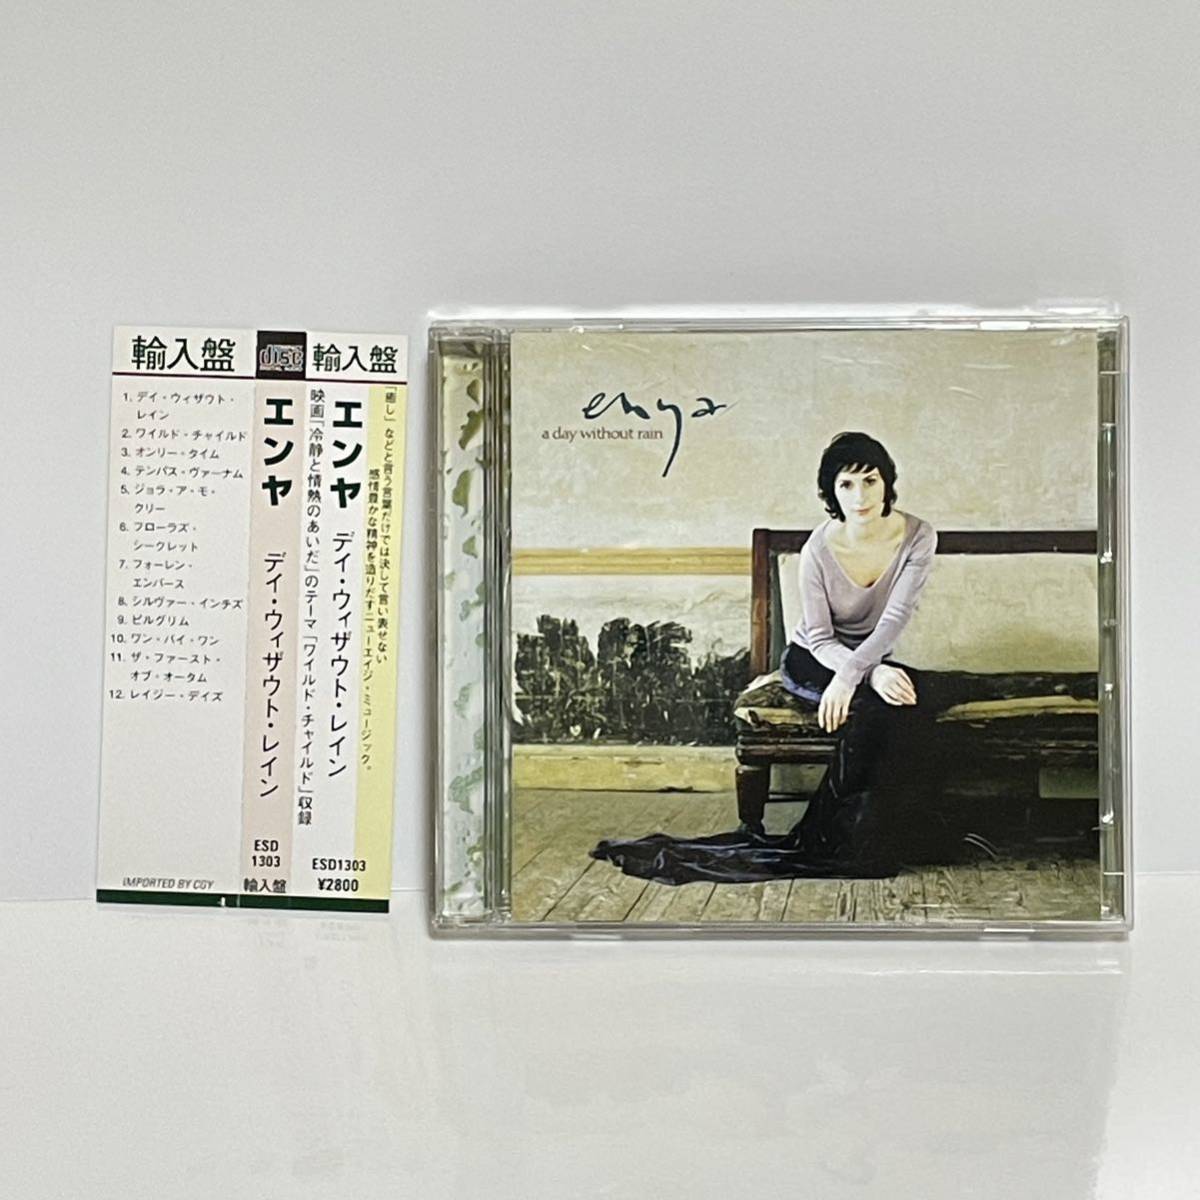 G310★エンヤ Enya ア・デイ・ウィズアウト・レイン A Day Without Rain /CDの画像1